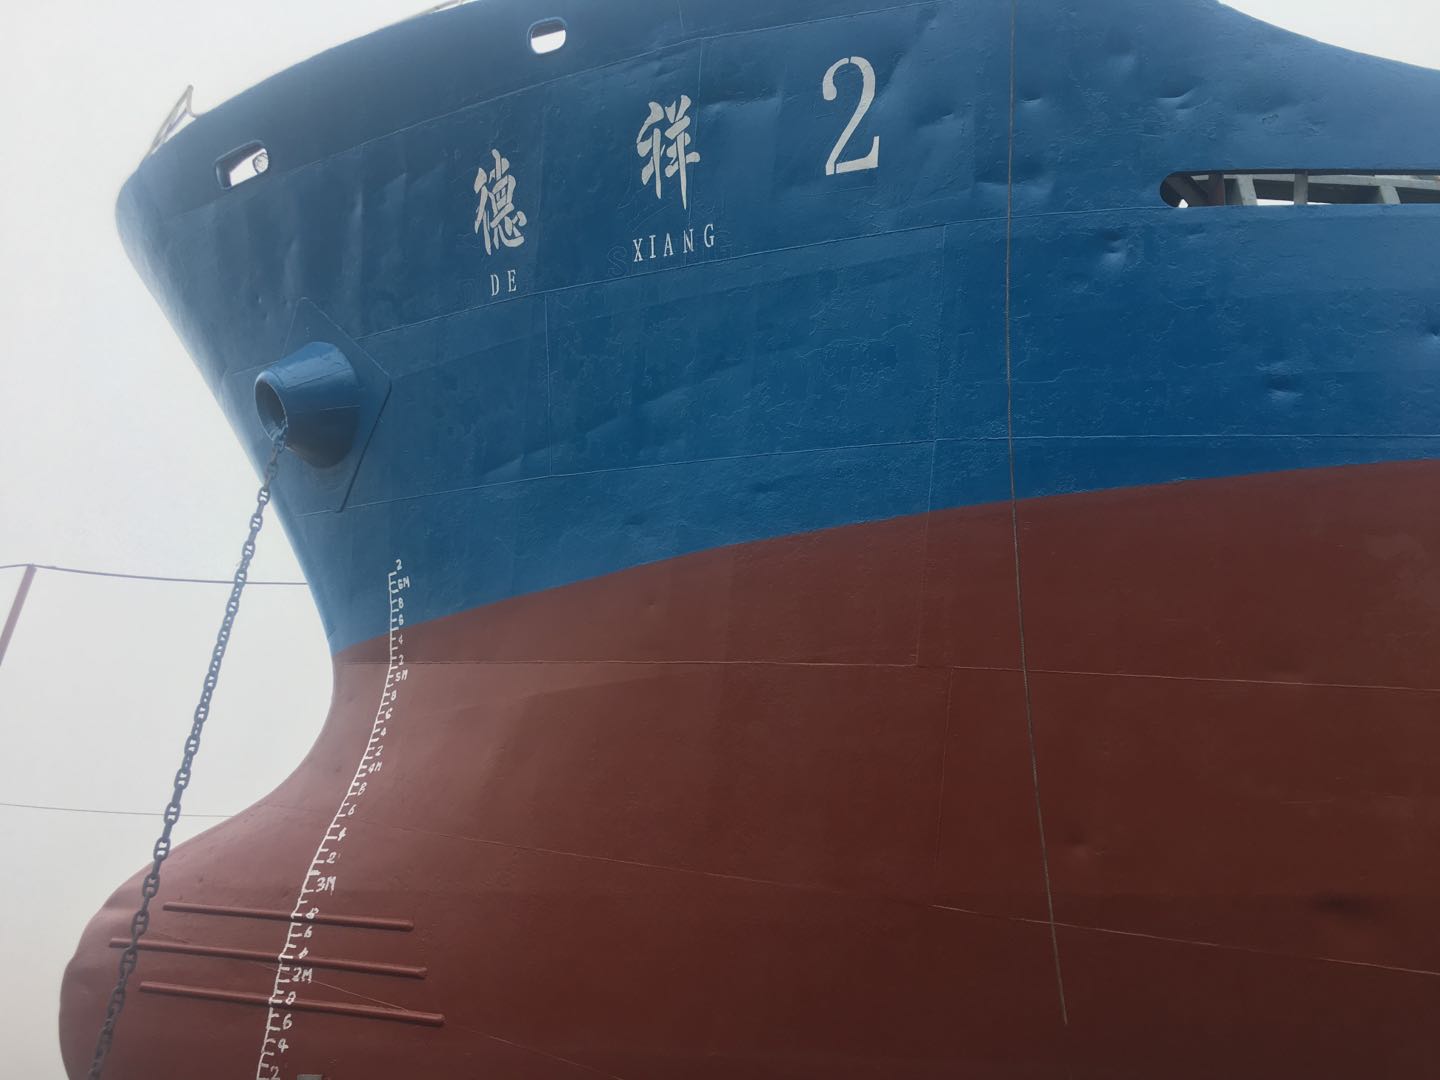 3700吨沿海散货船